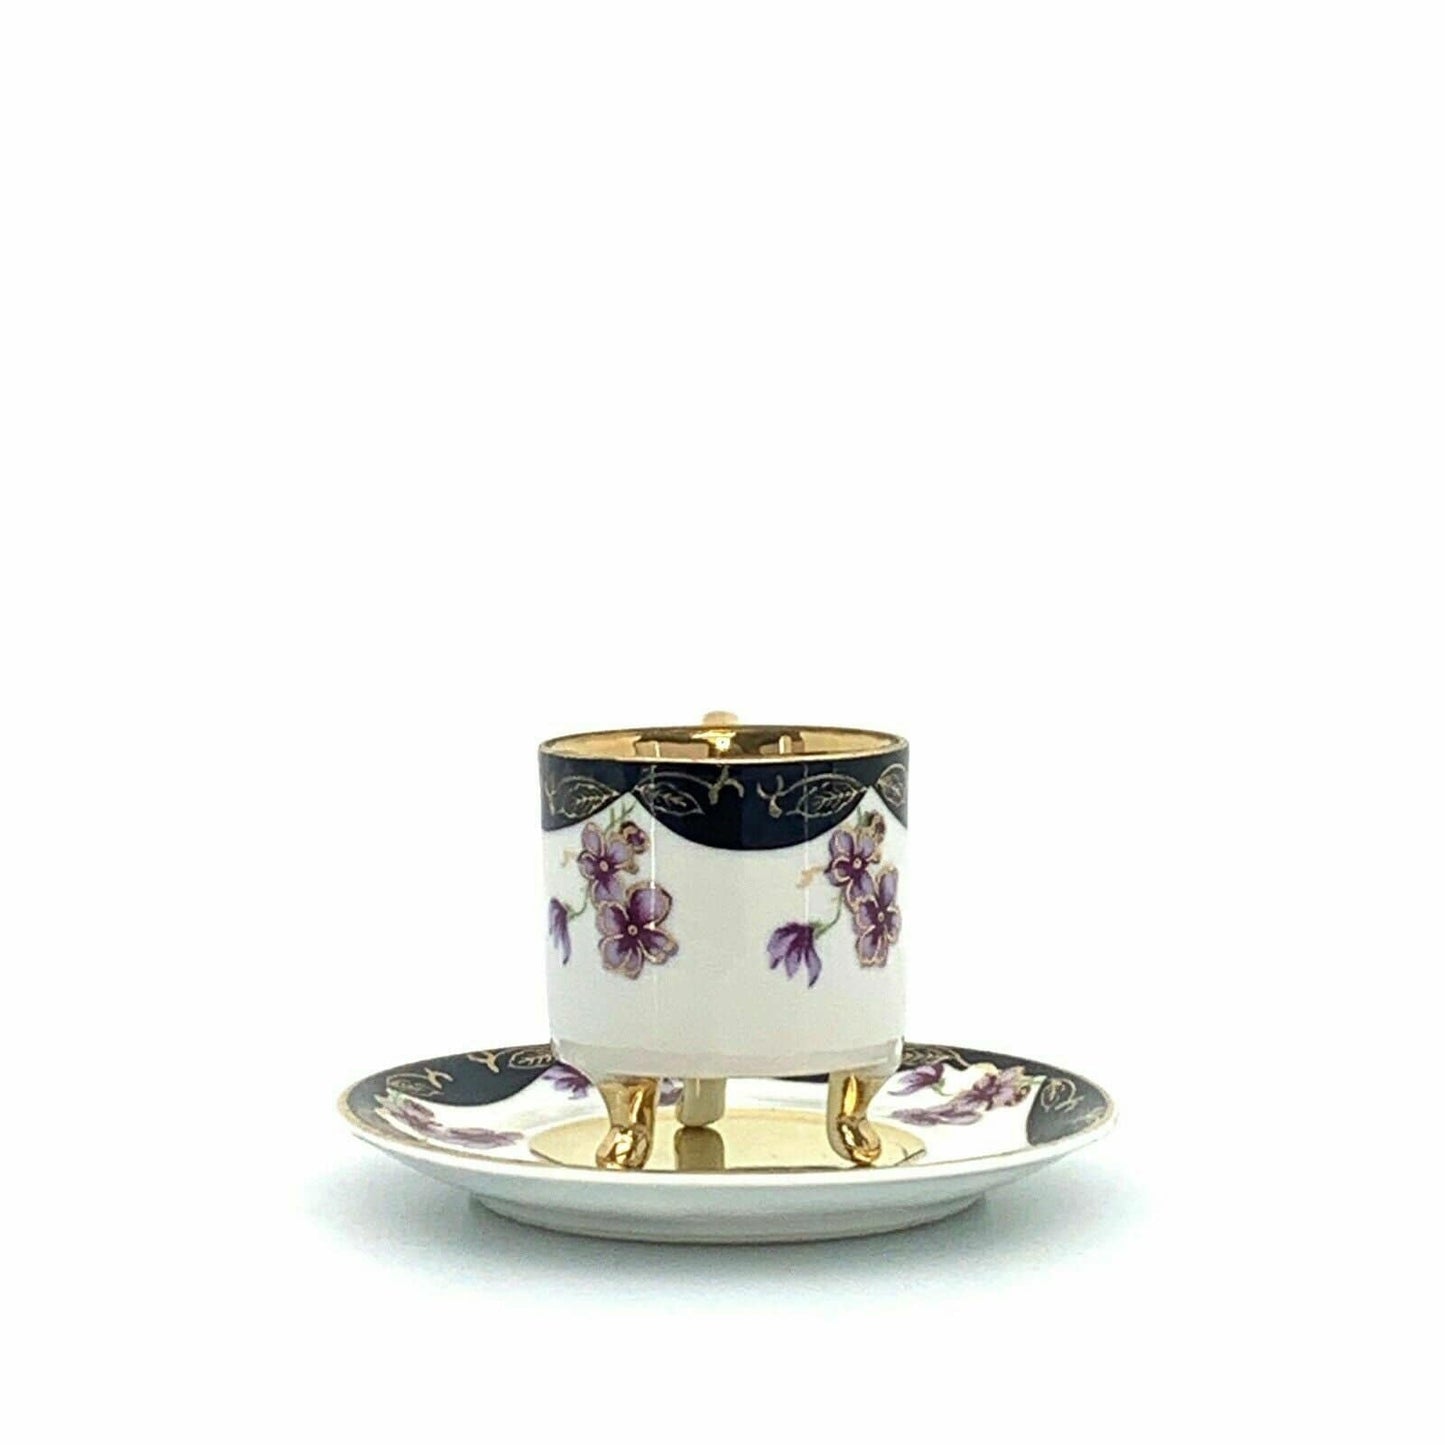 Lefton China Sweet Violets Vintage Hand Painted Porcelain Cup & Saucer Set